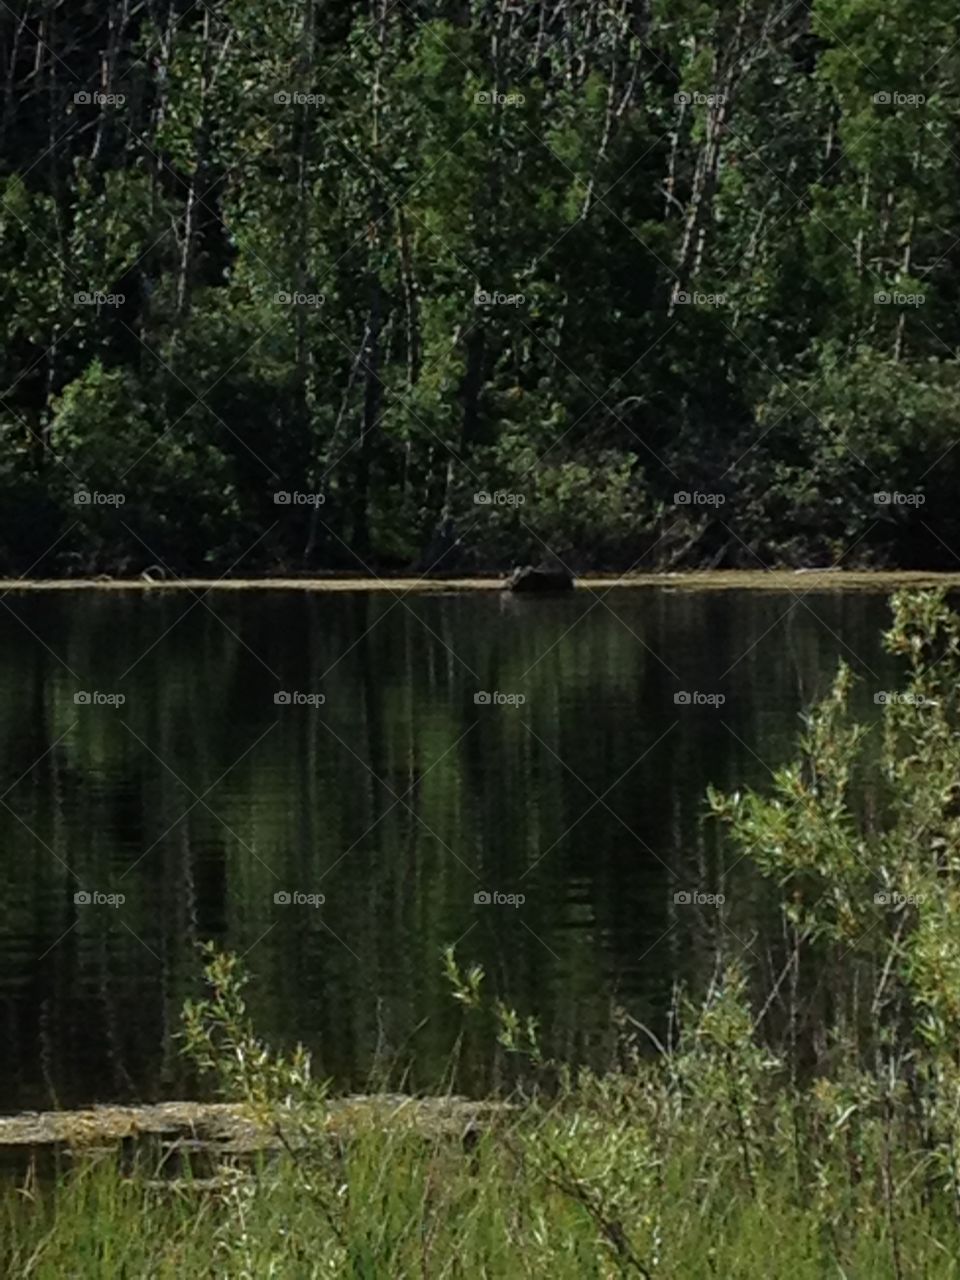 Moose in lake